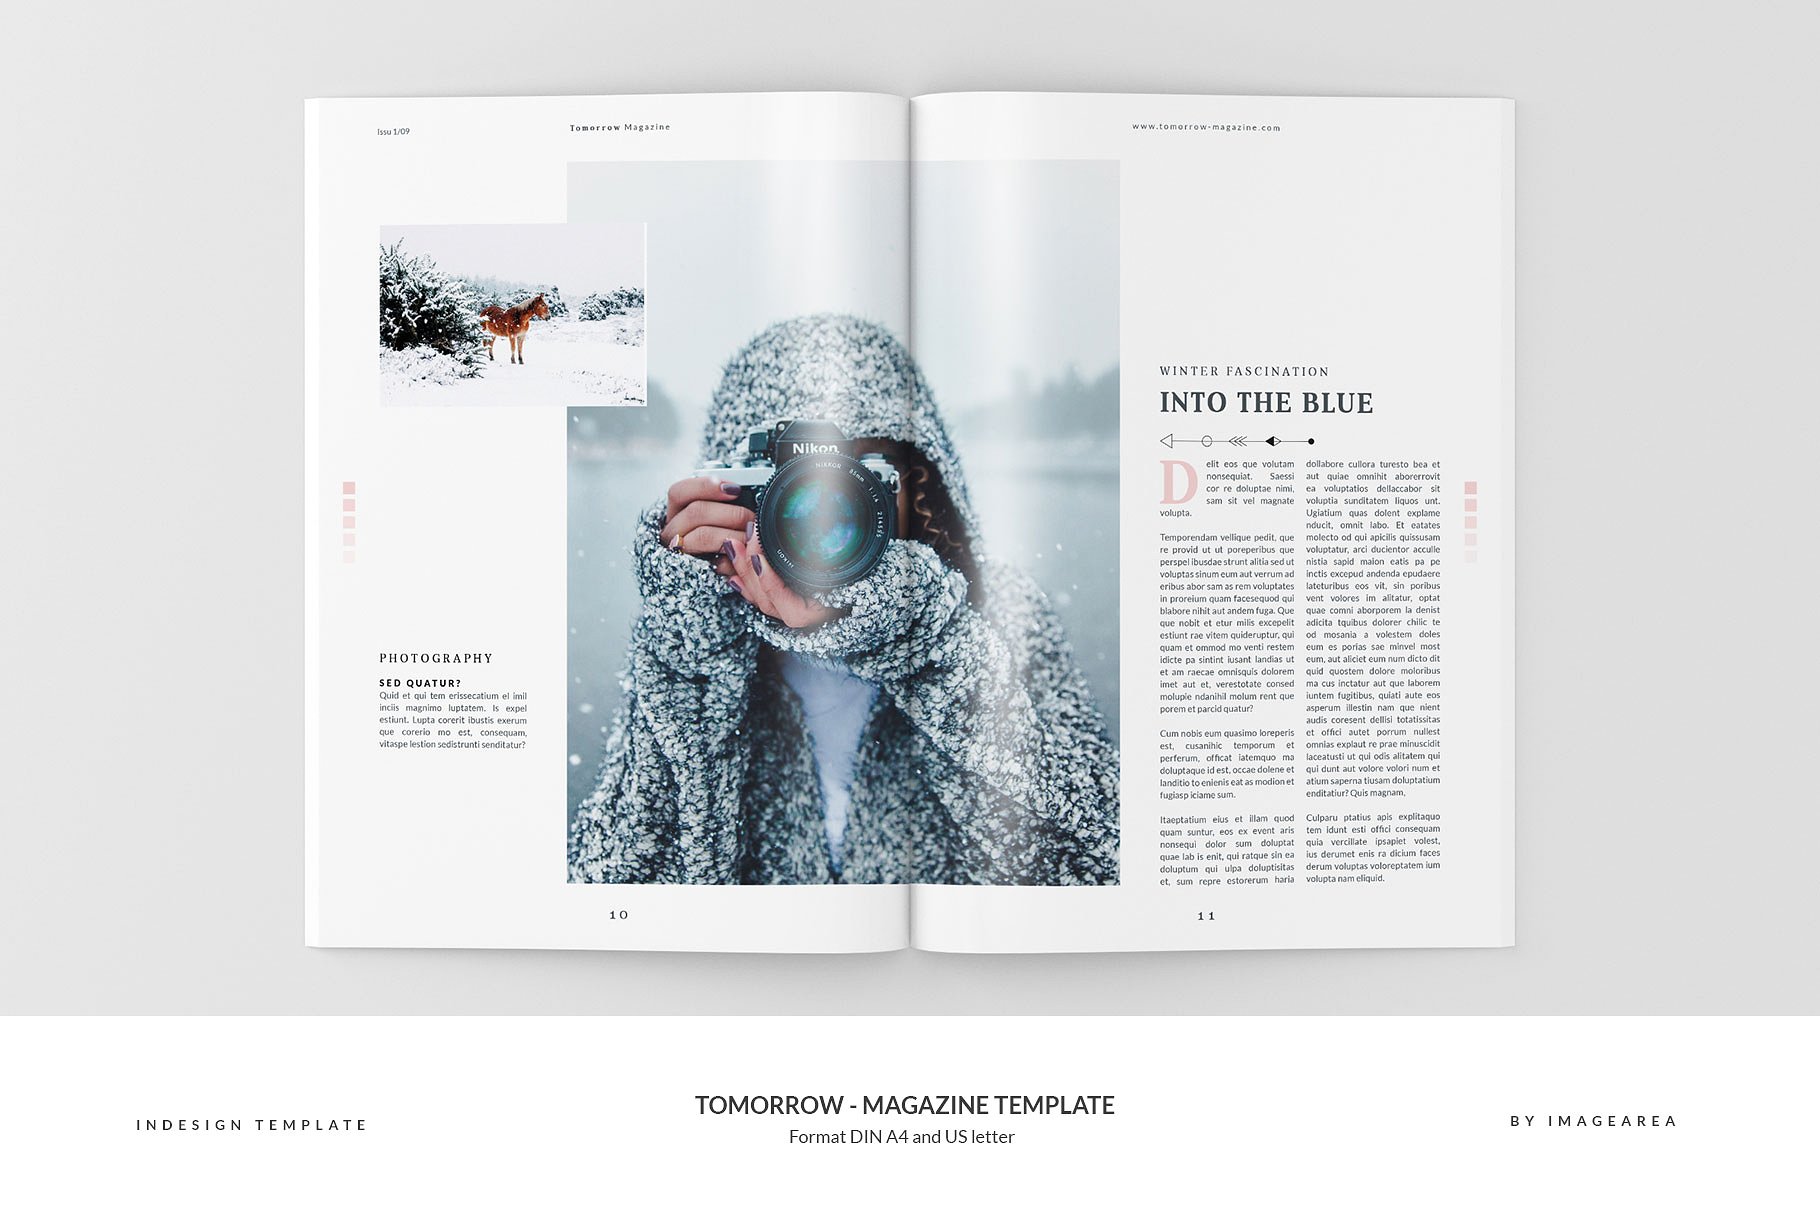 图文并茂排版优秀的专业杂志模板 Tomorrow – Magazine Template插图6